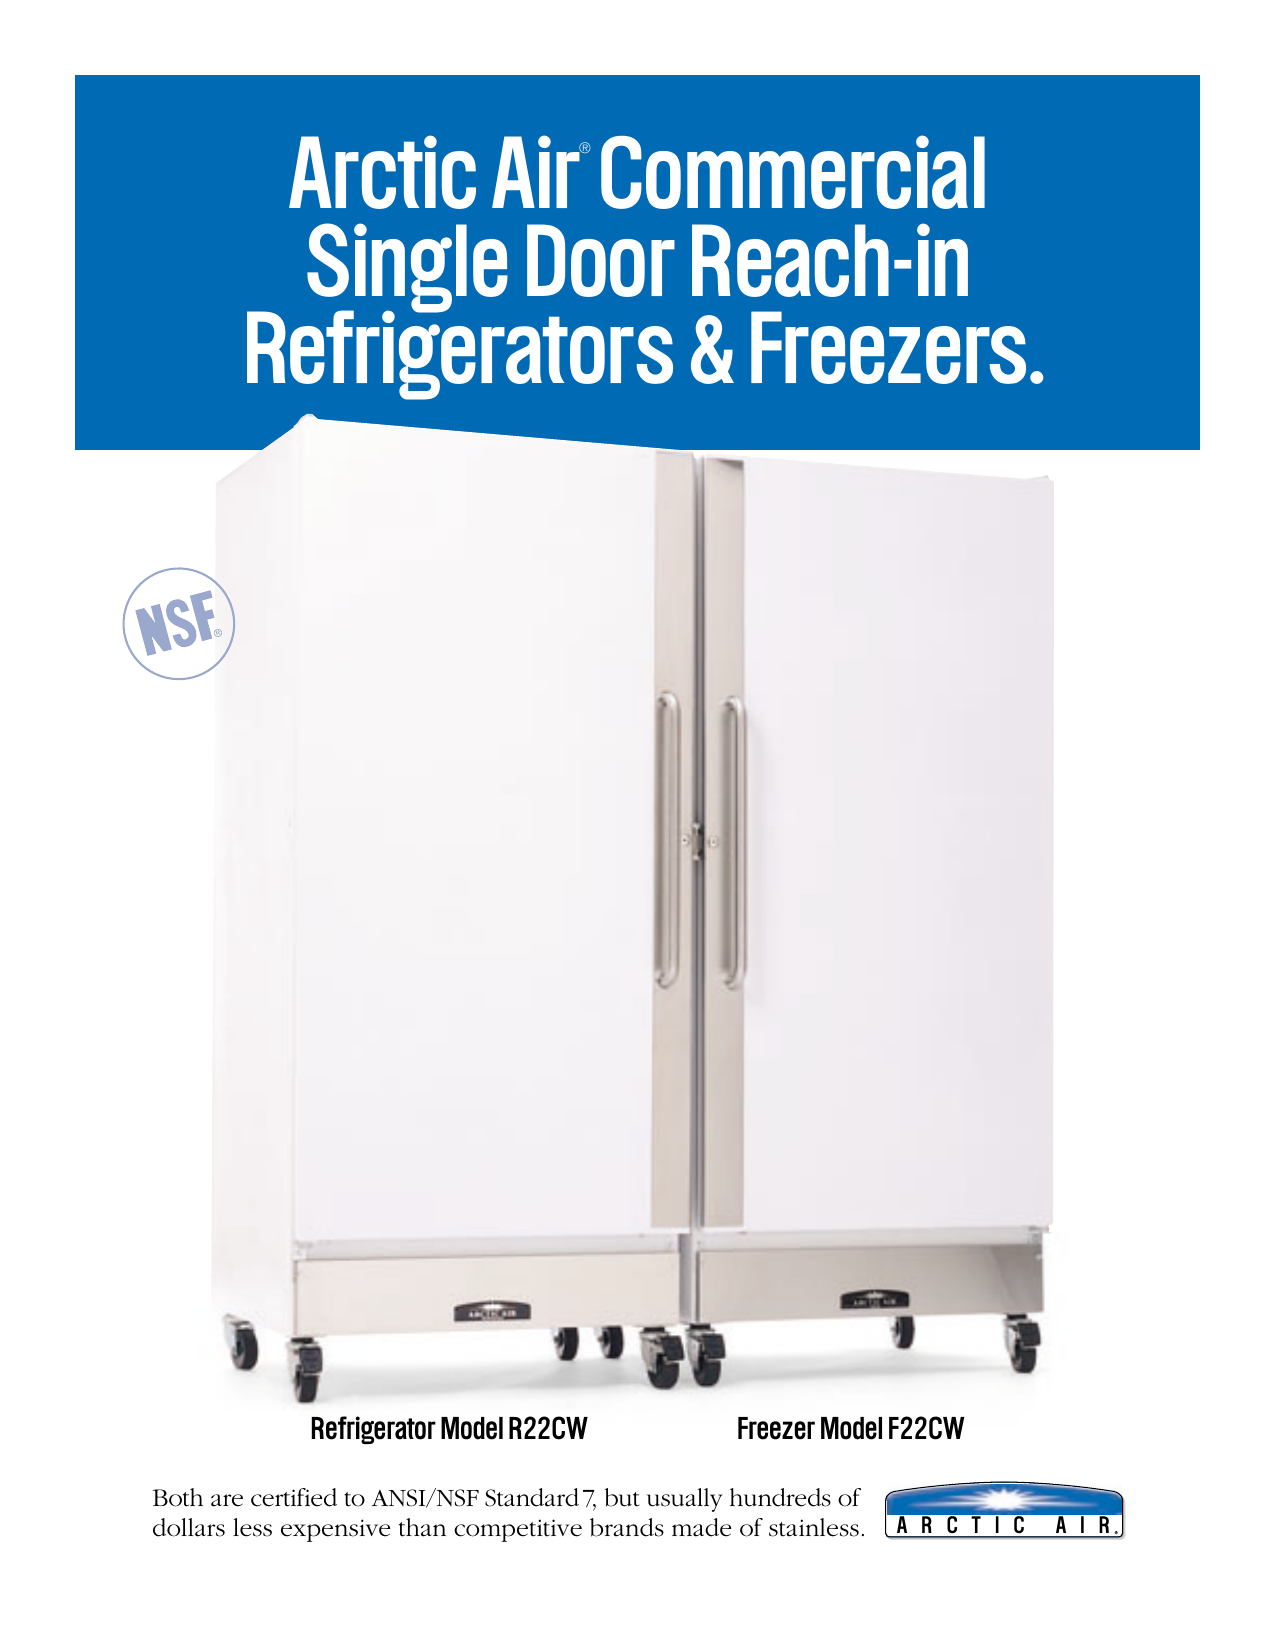 Arctic Air Refrigerators